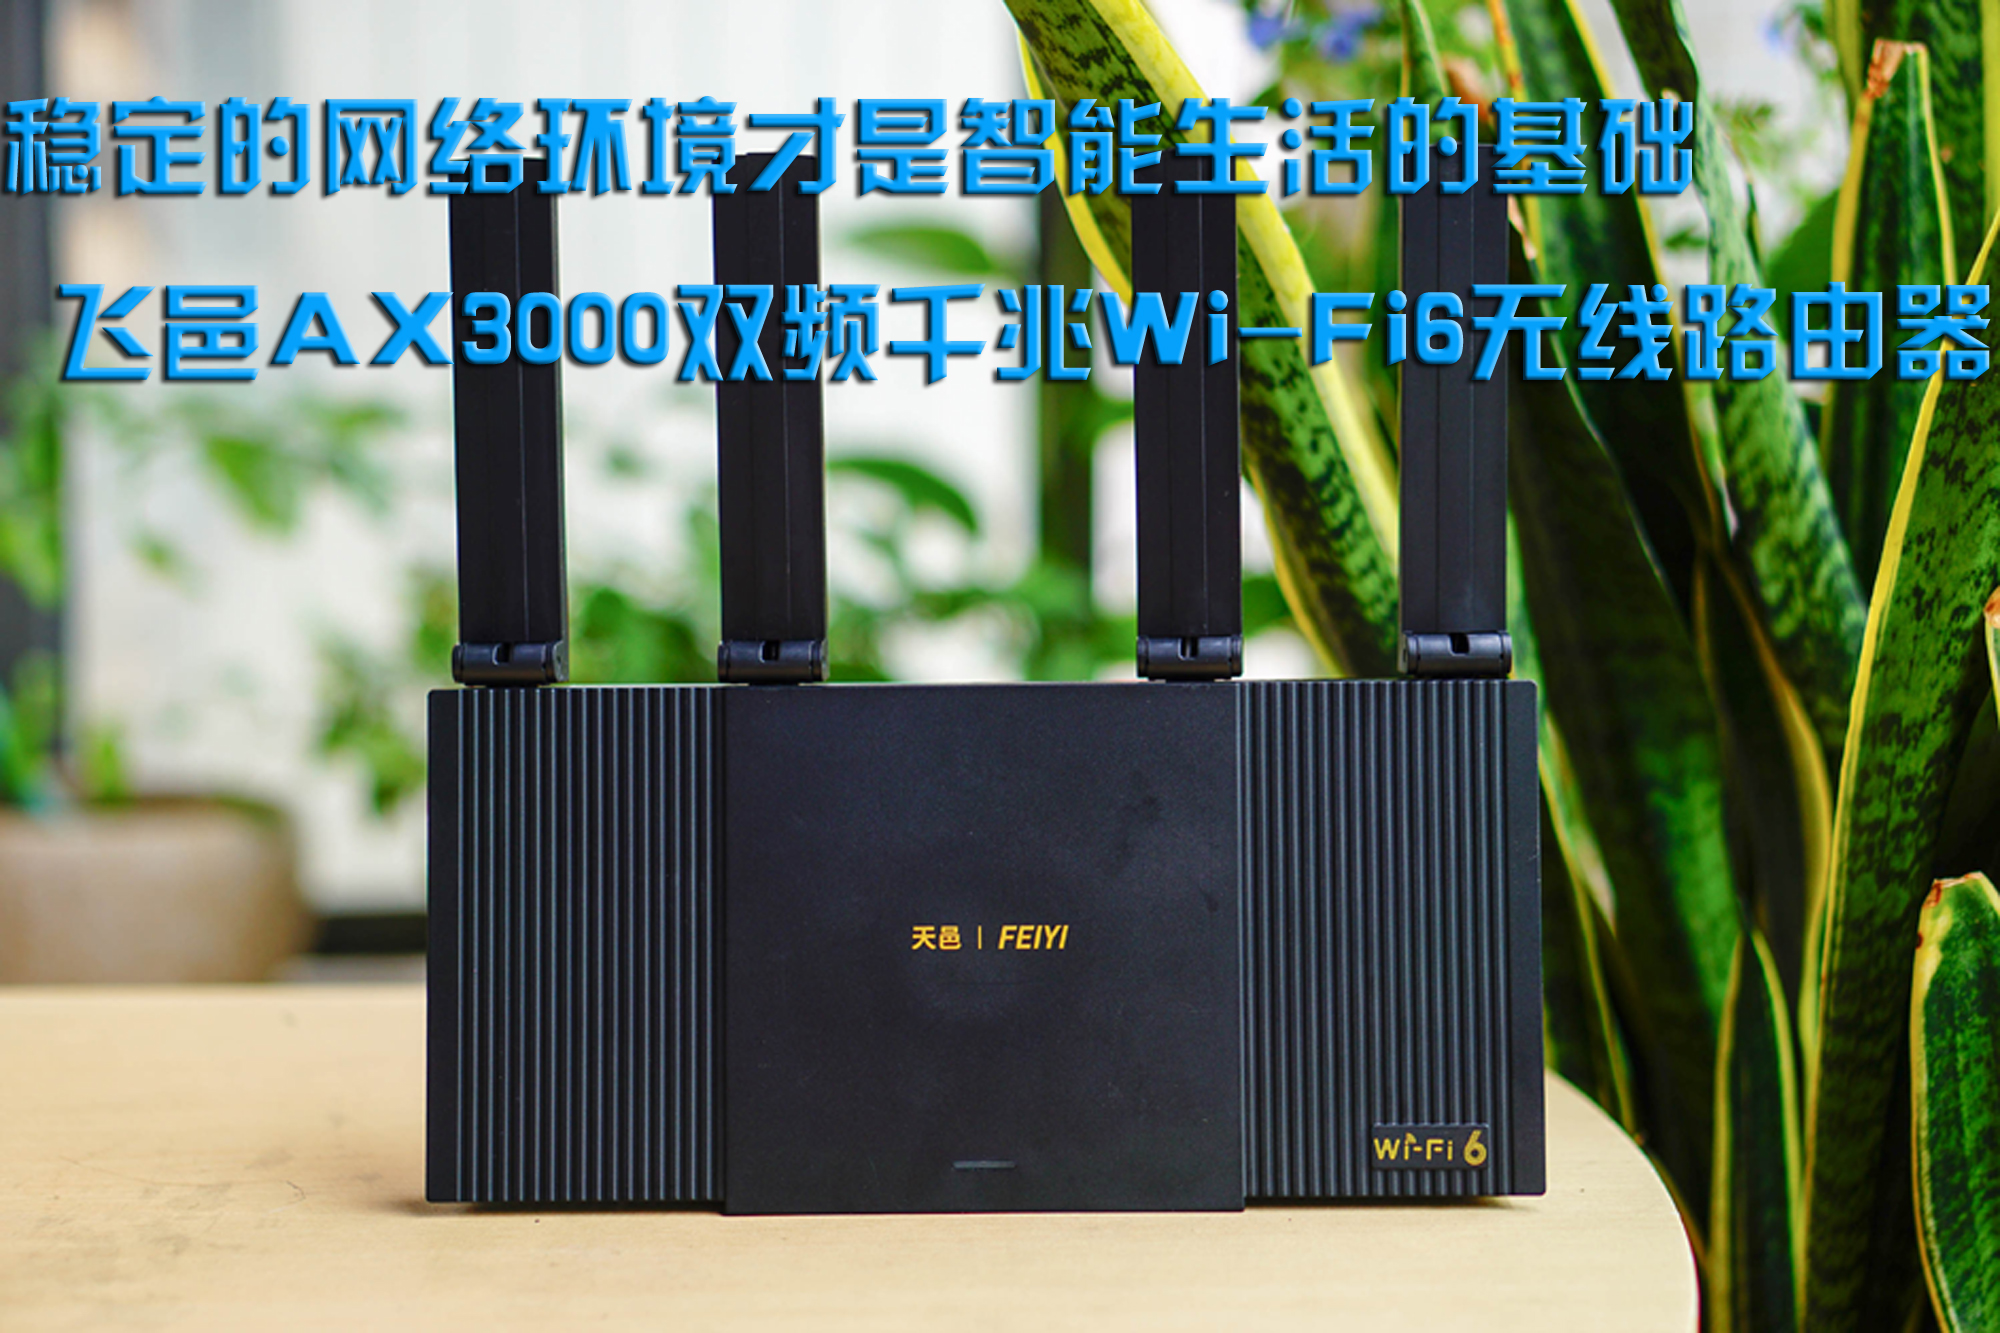 稳定的网络环境才是智能生活的基础，飞邑AX3000双频千兆Wi-Fi6无线路由器